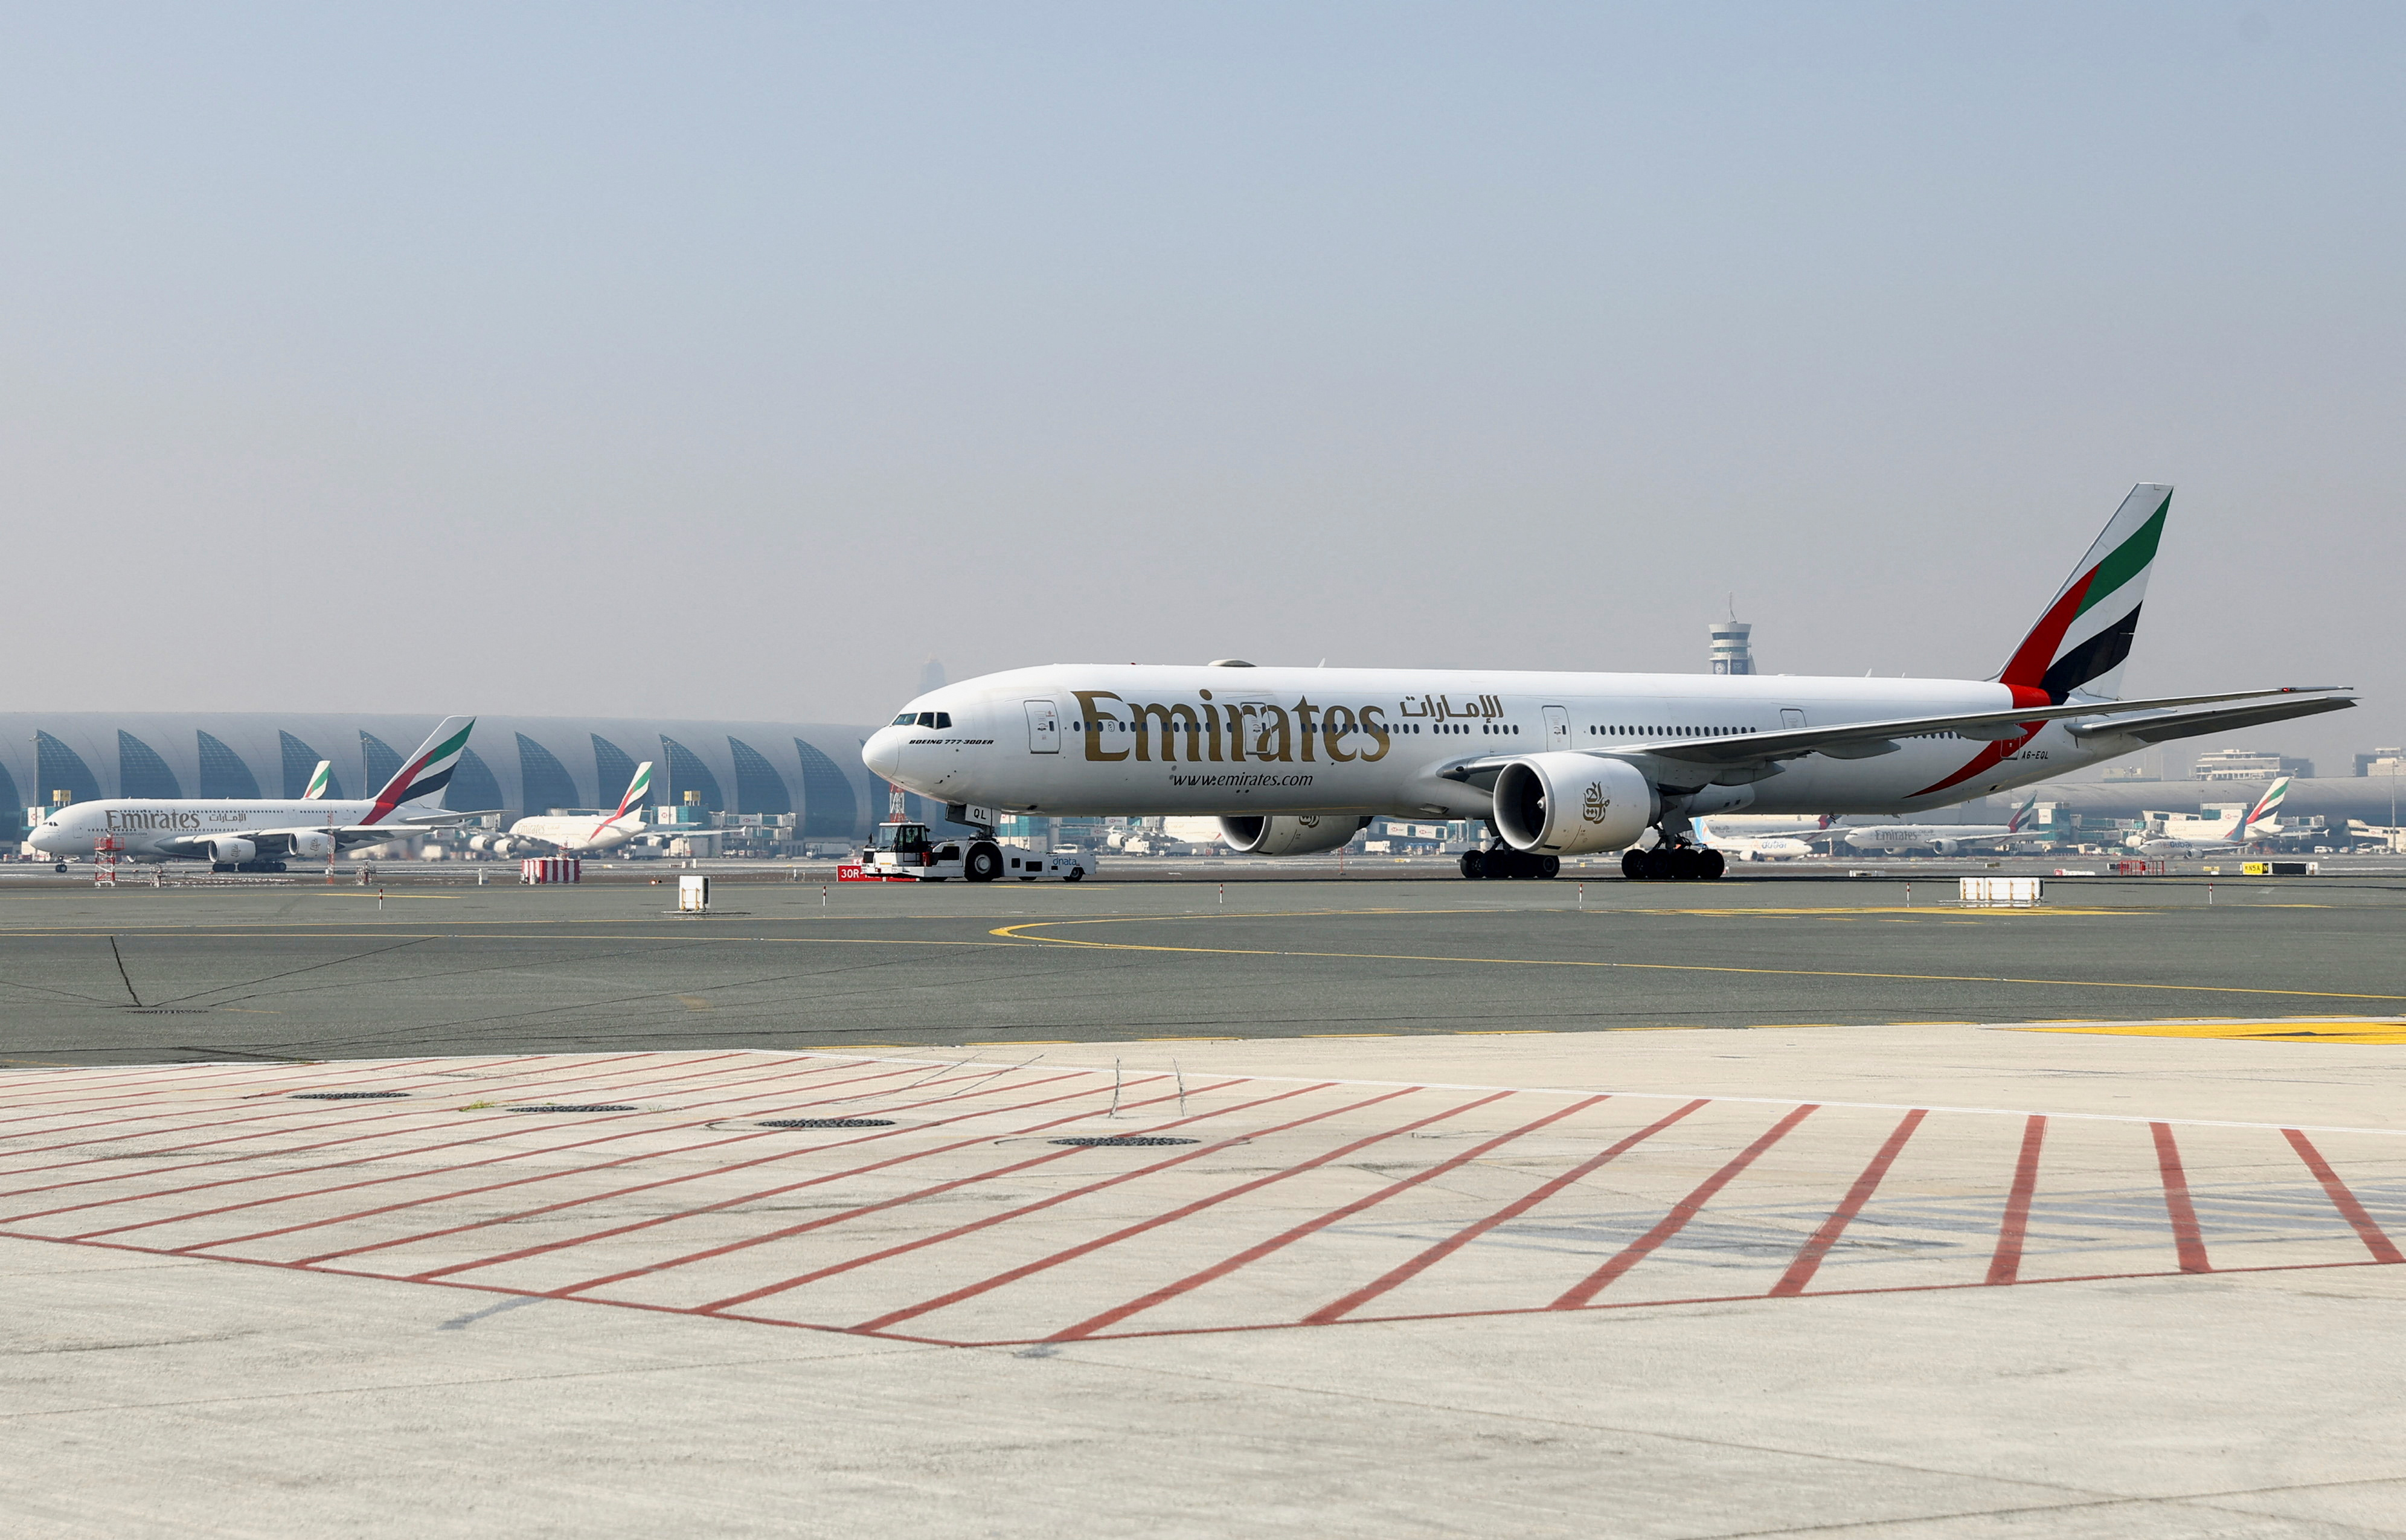 Emirates airline planes are pictured at Dubai airport, in Dubai, United Arab Emirates